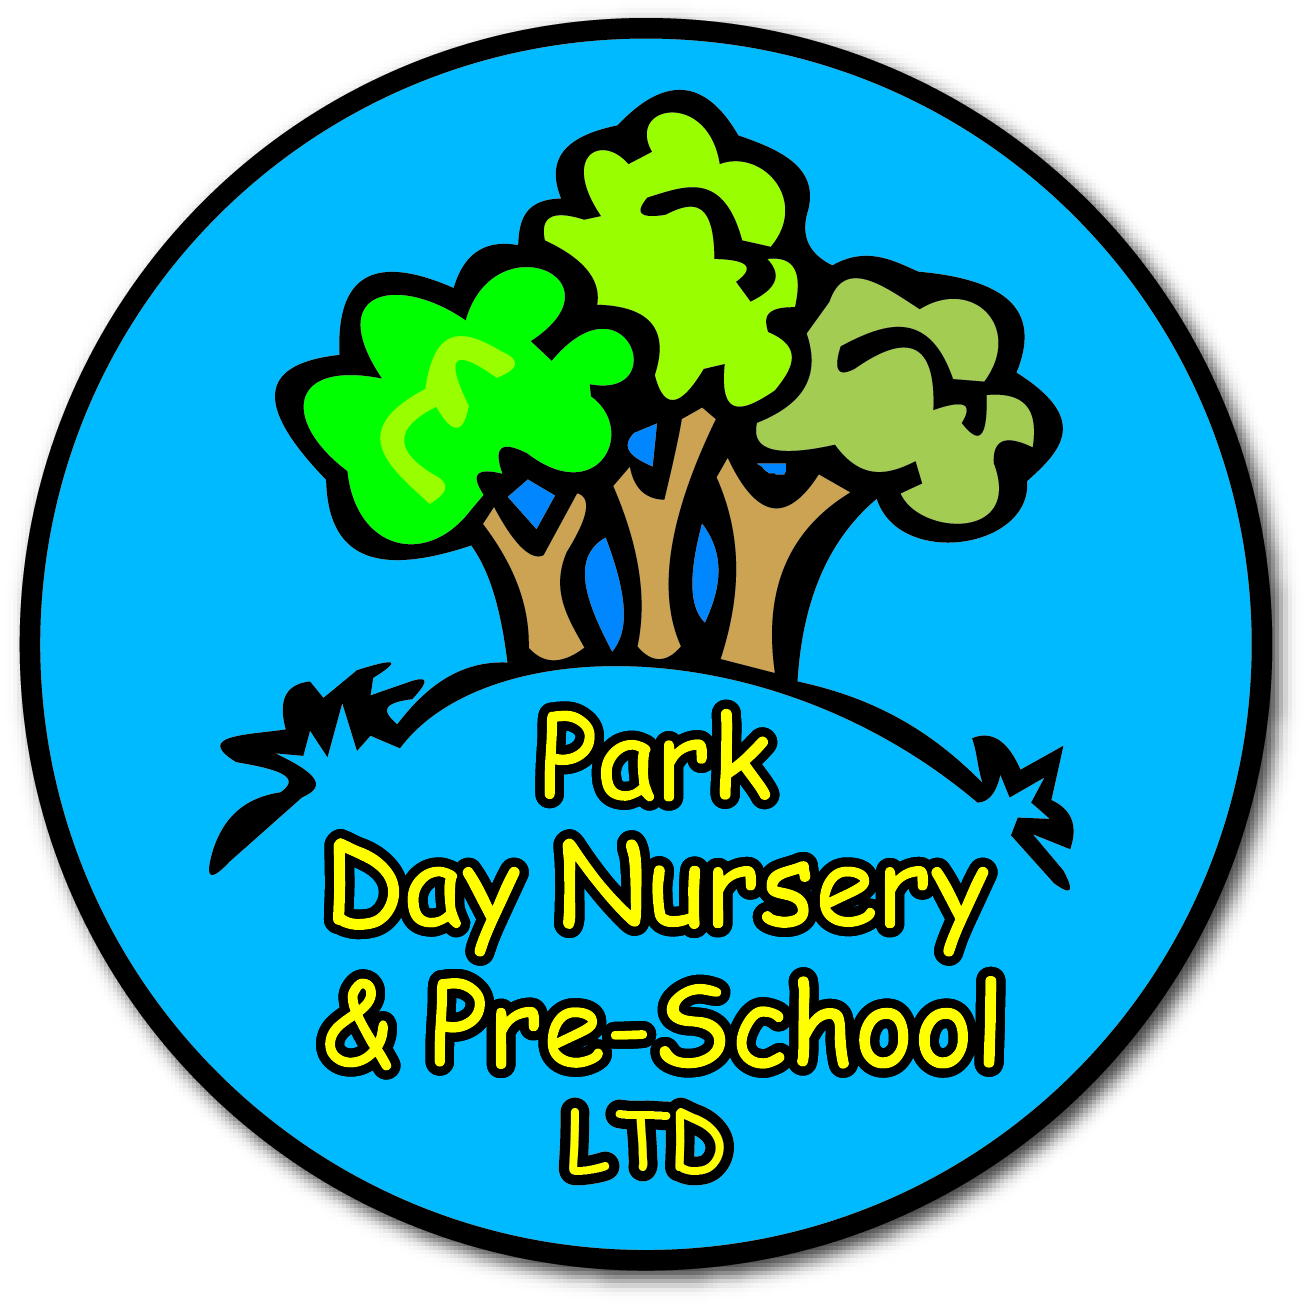 Park Day Nursery & Pre-School